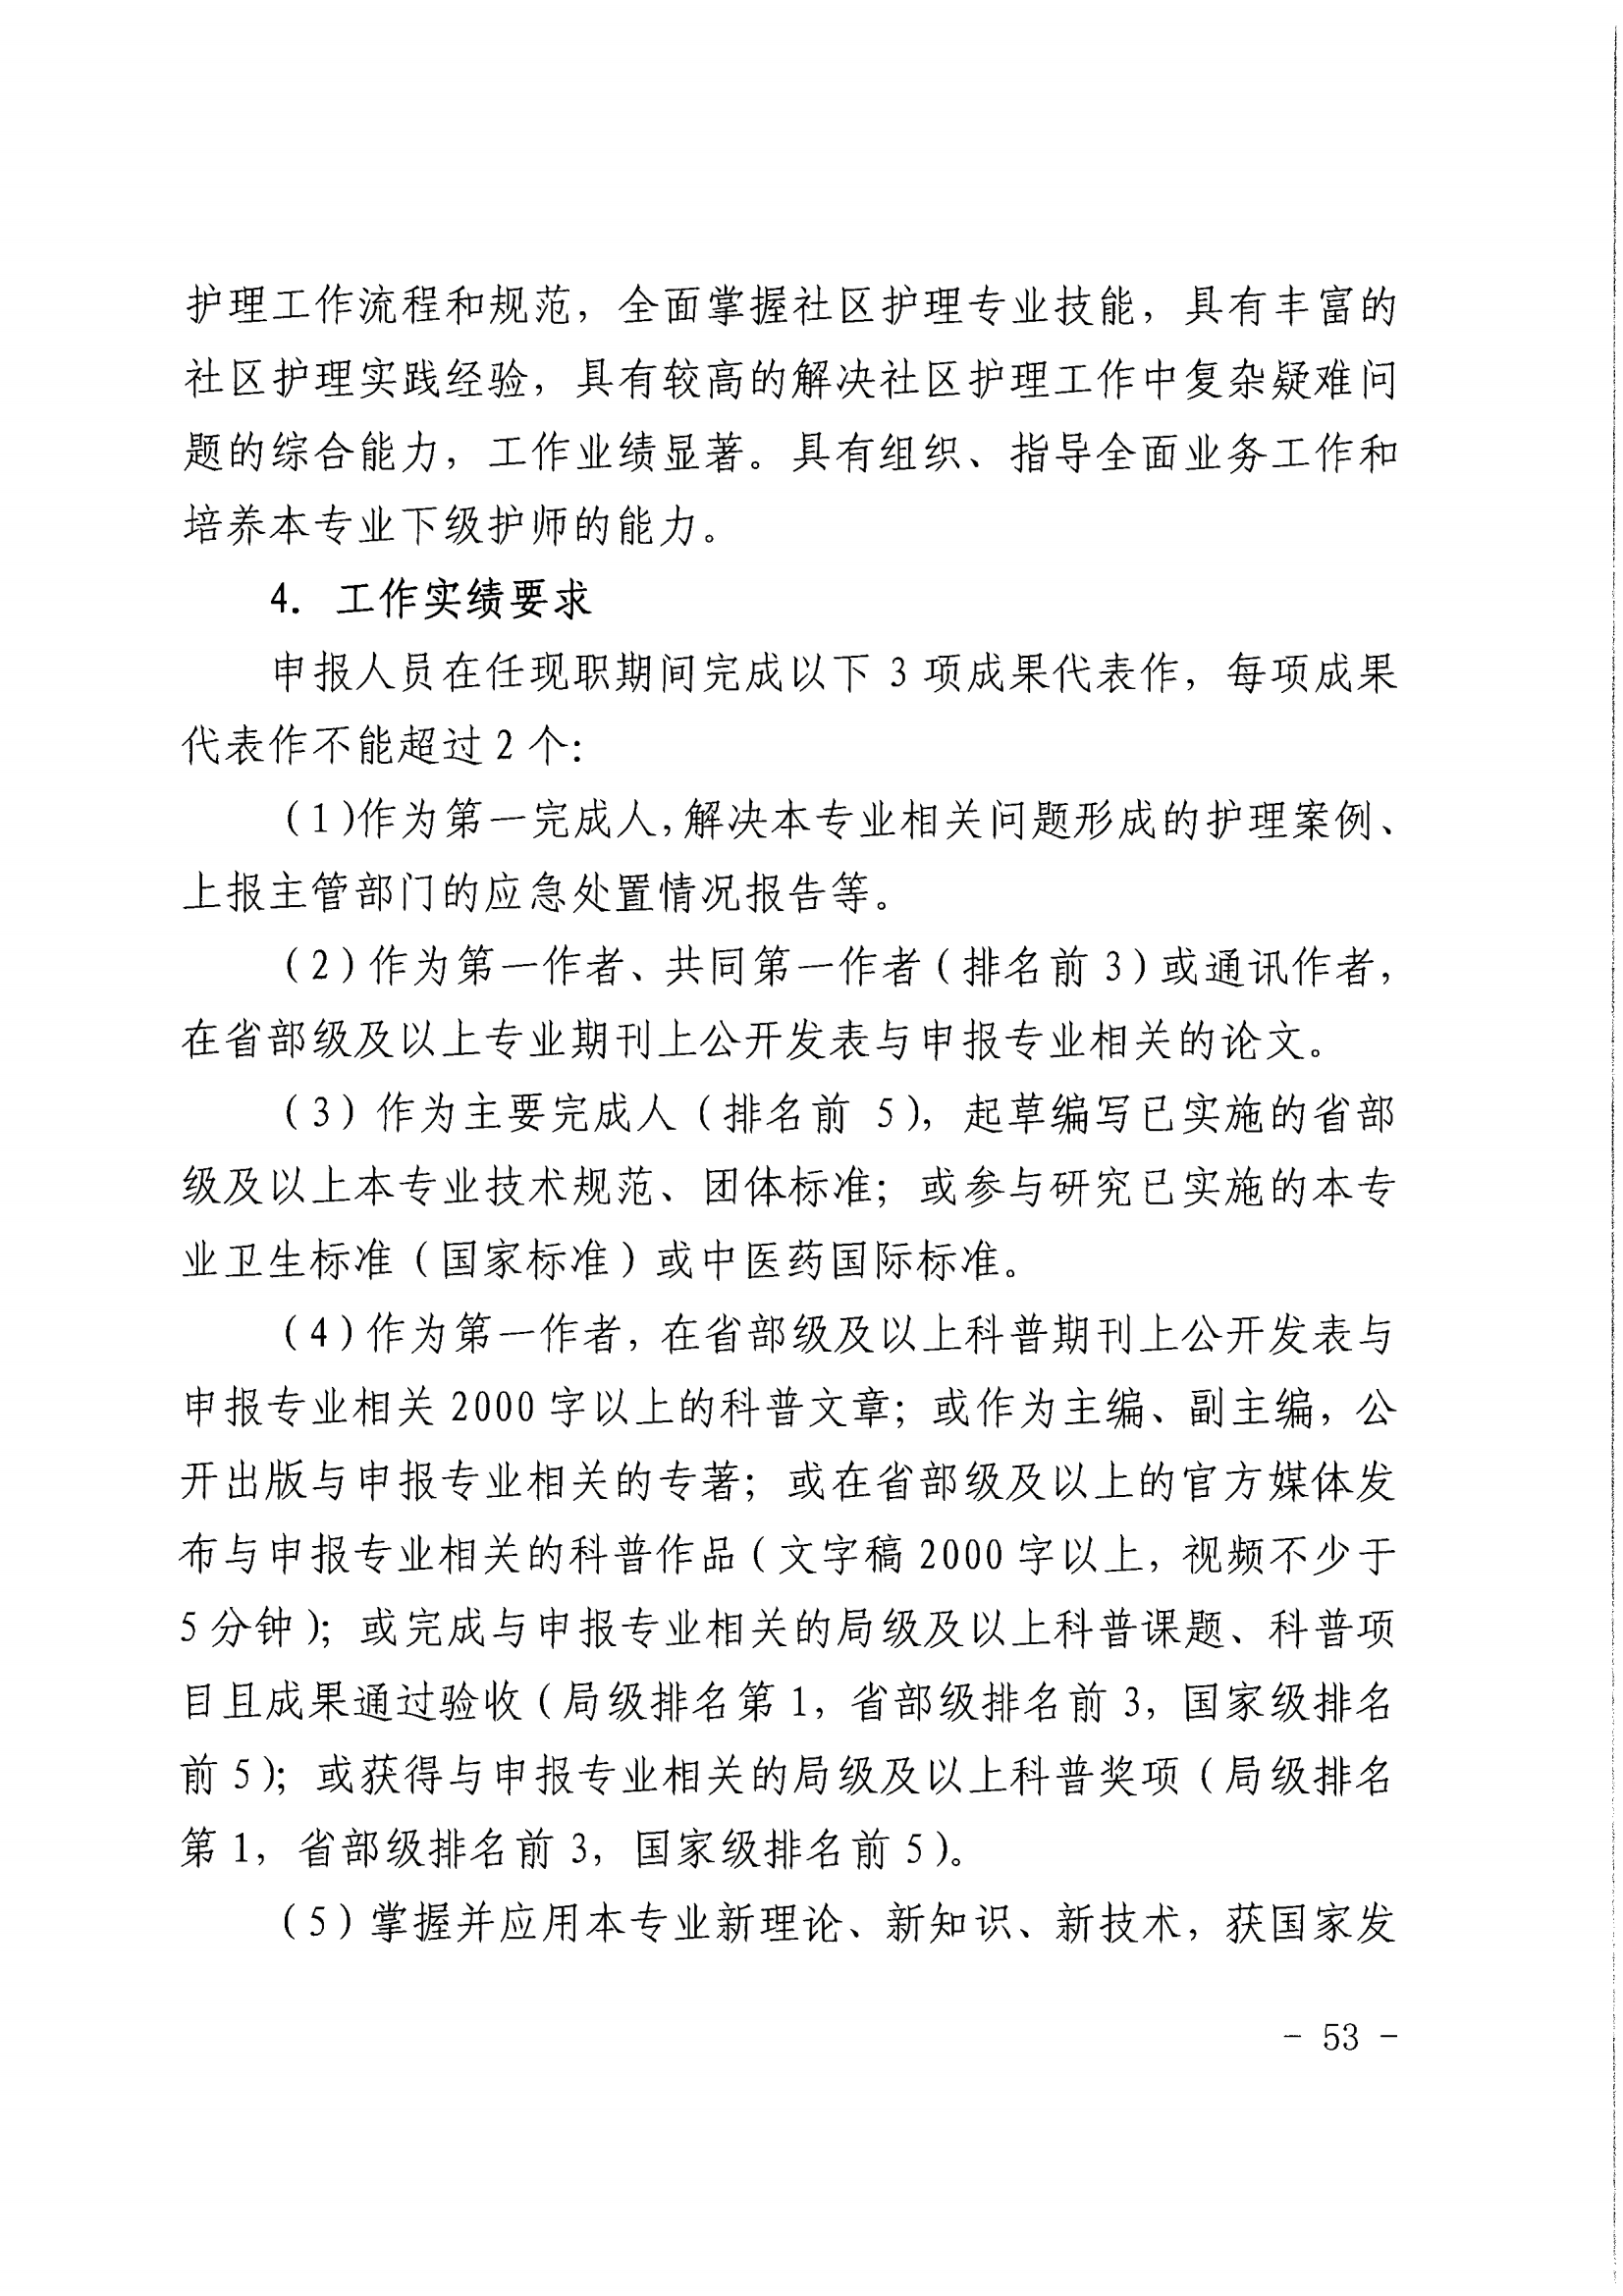 1-沪人社专〔2022〕320号（上海市人力资源和社会保障局 上海市卫生健康委员会上海市中医药管理局 关于印发《关于深化上海市卫生专业技术人员职称制度改革的实施意见》的通知）_52.png